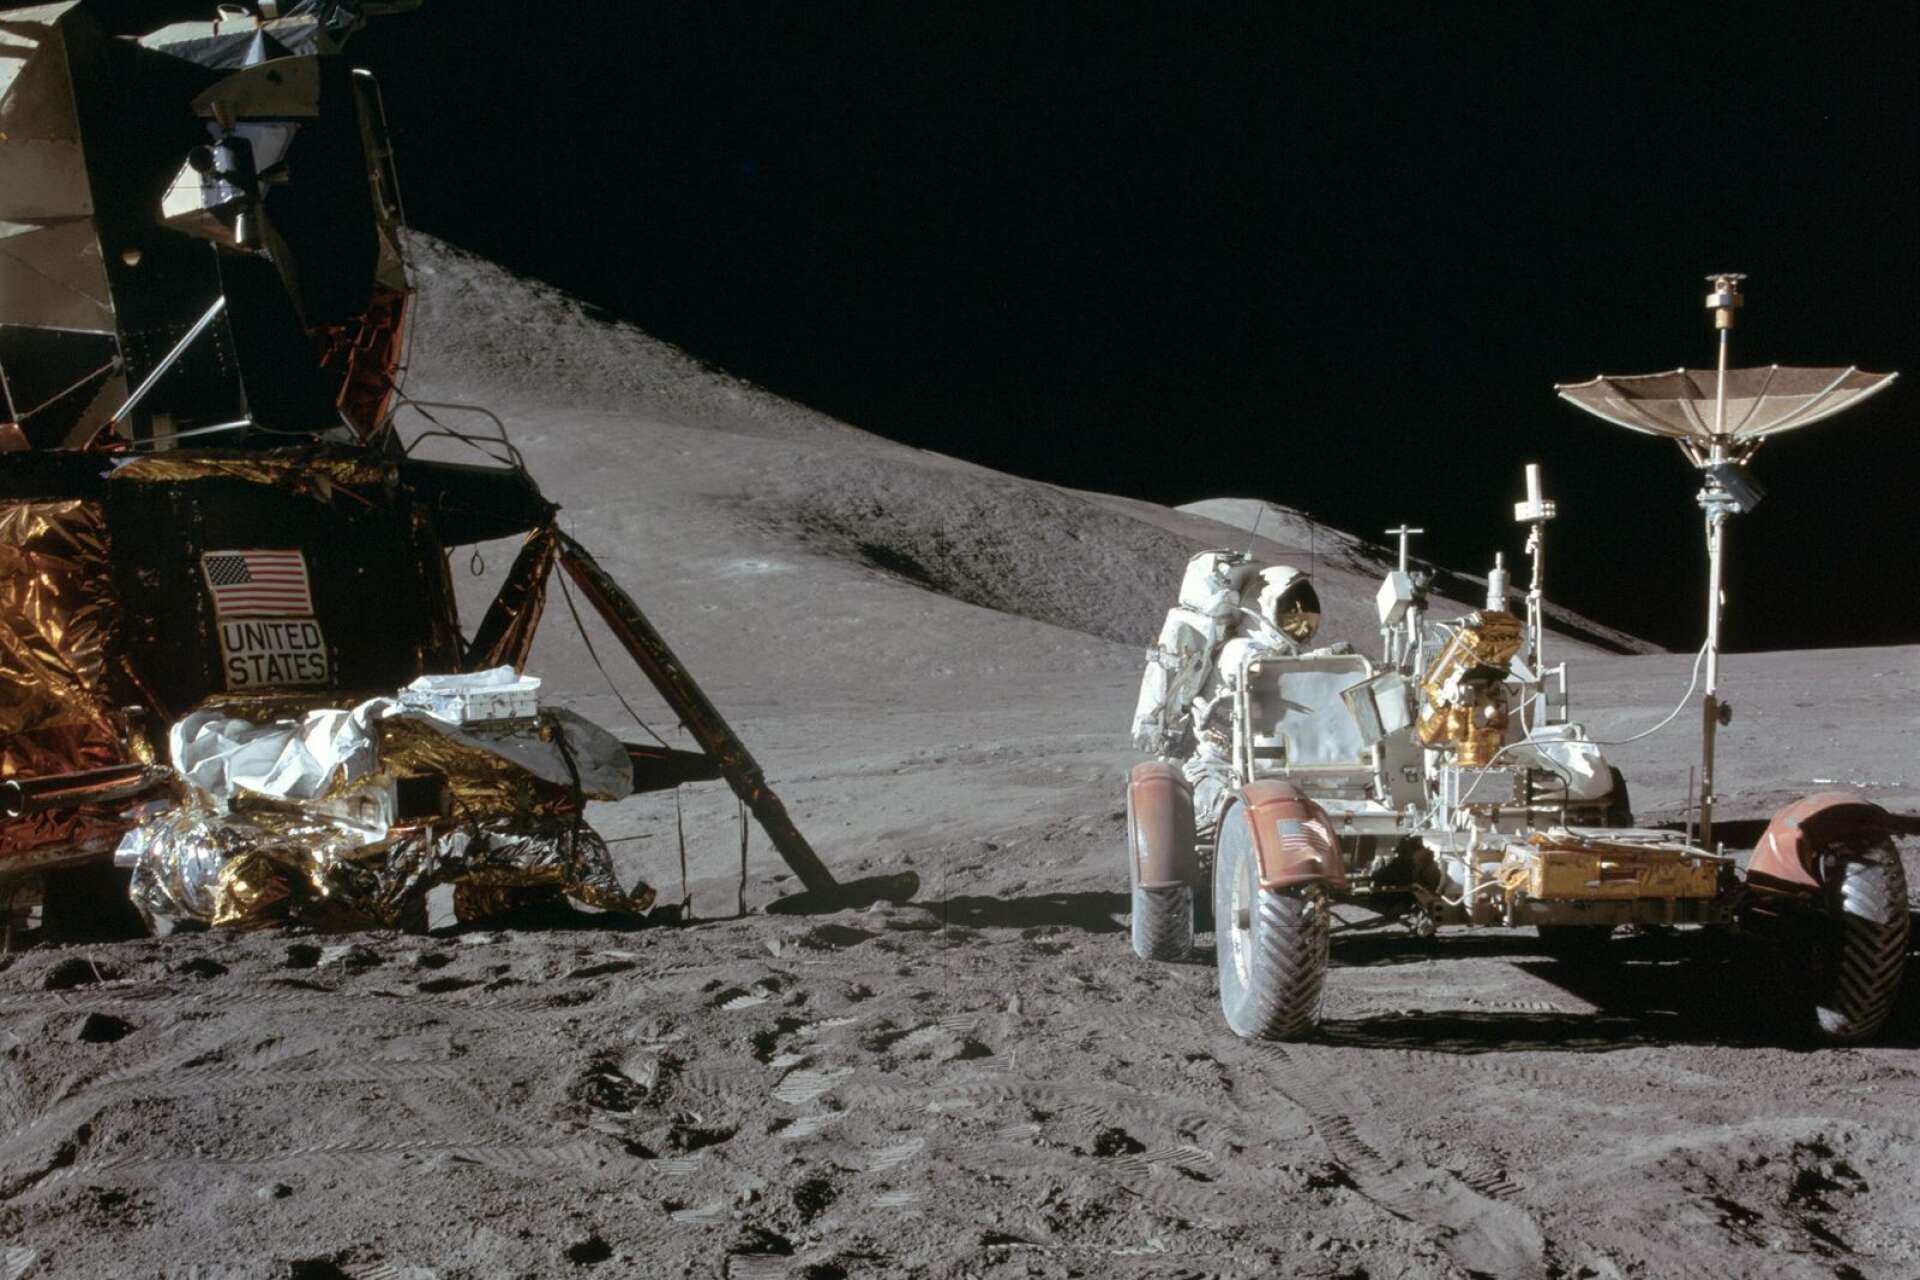 Jim Irwin vid månbilen efter första dagens utflykt.